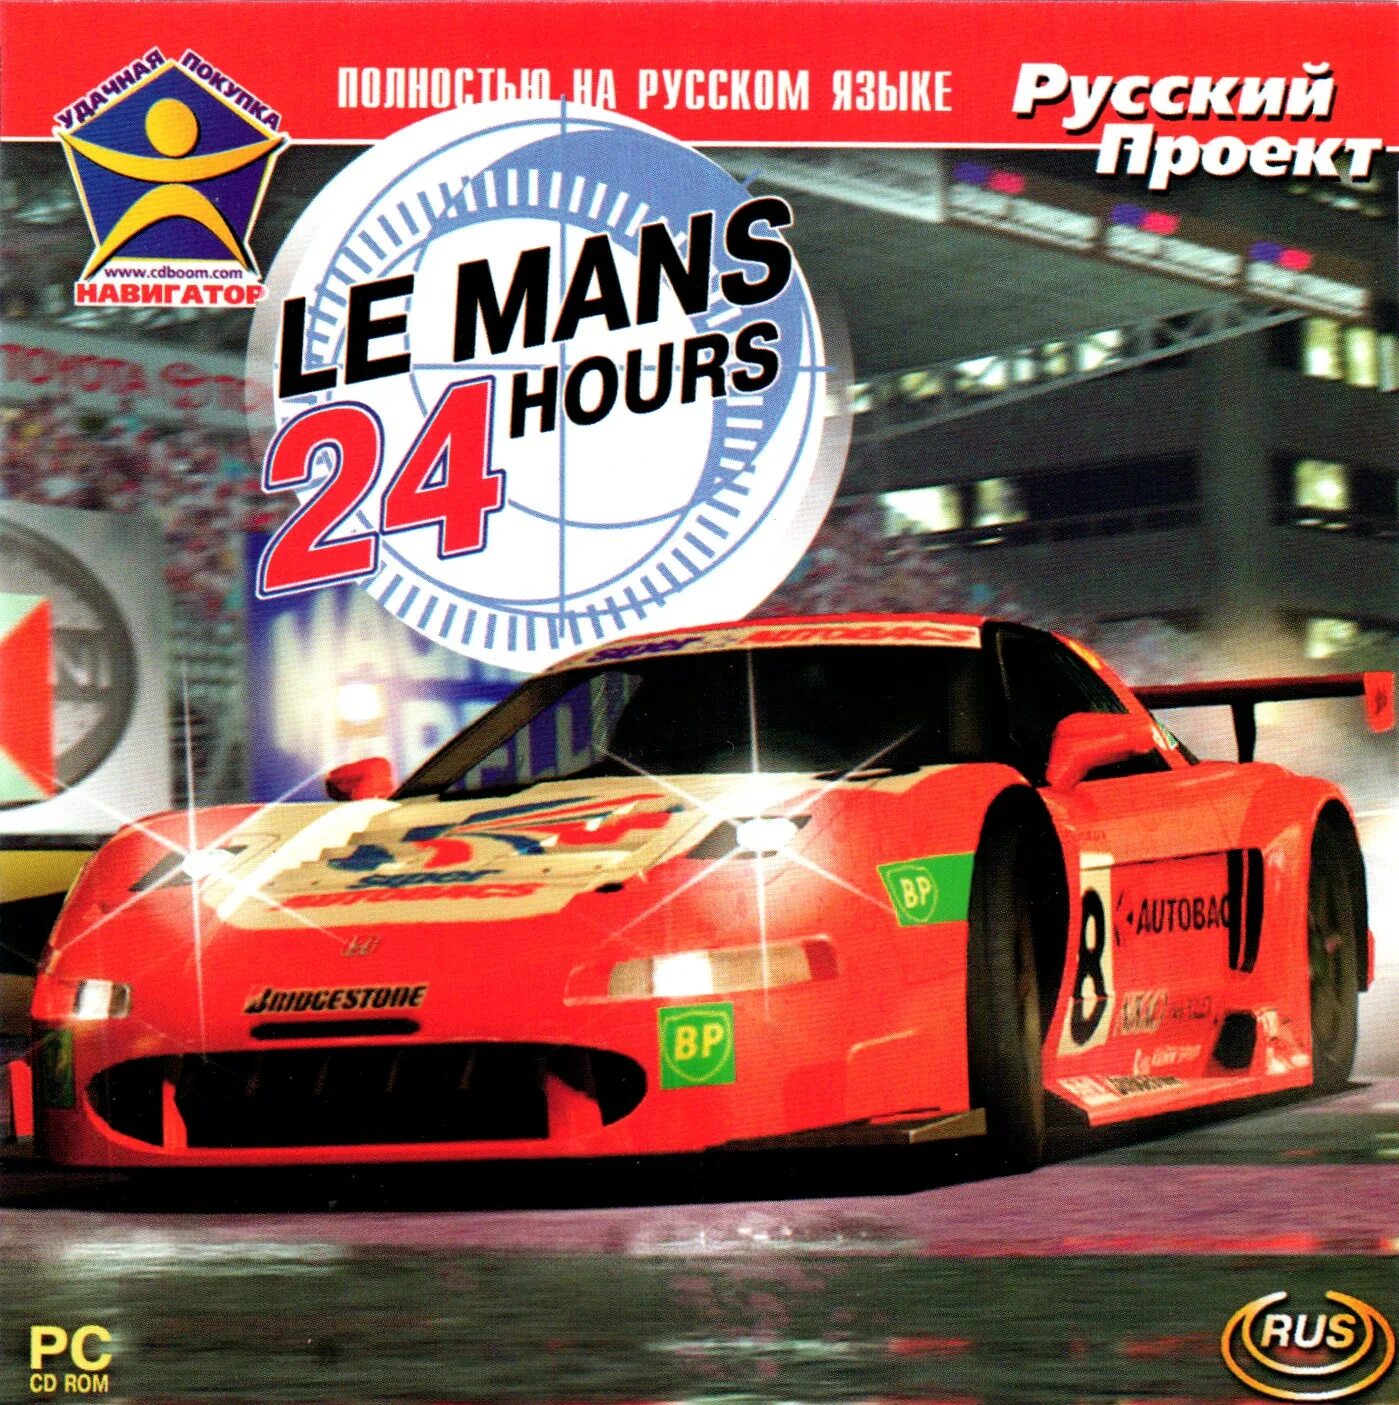 Lemans 24 hours / Ле-ман 24 часа Rus (2002). 24 Часа Ле-Мана игра на ПК. Ps1 обложка le mans 24 hours. Часы настенные гонки в Ле ман. 24 hours game